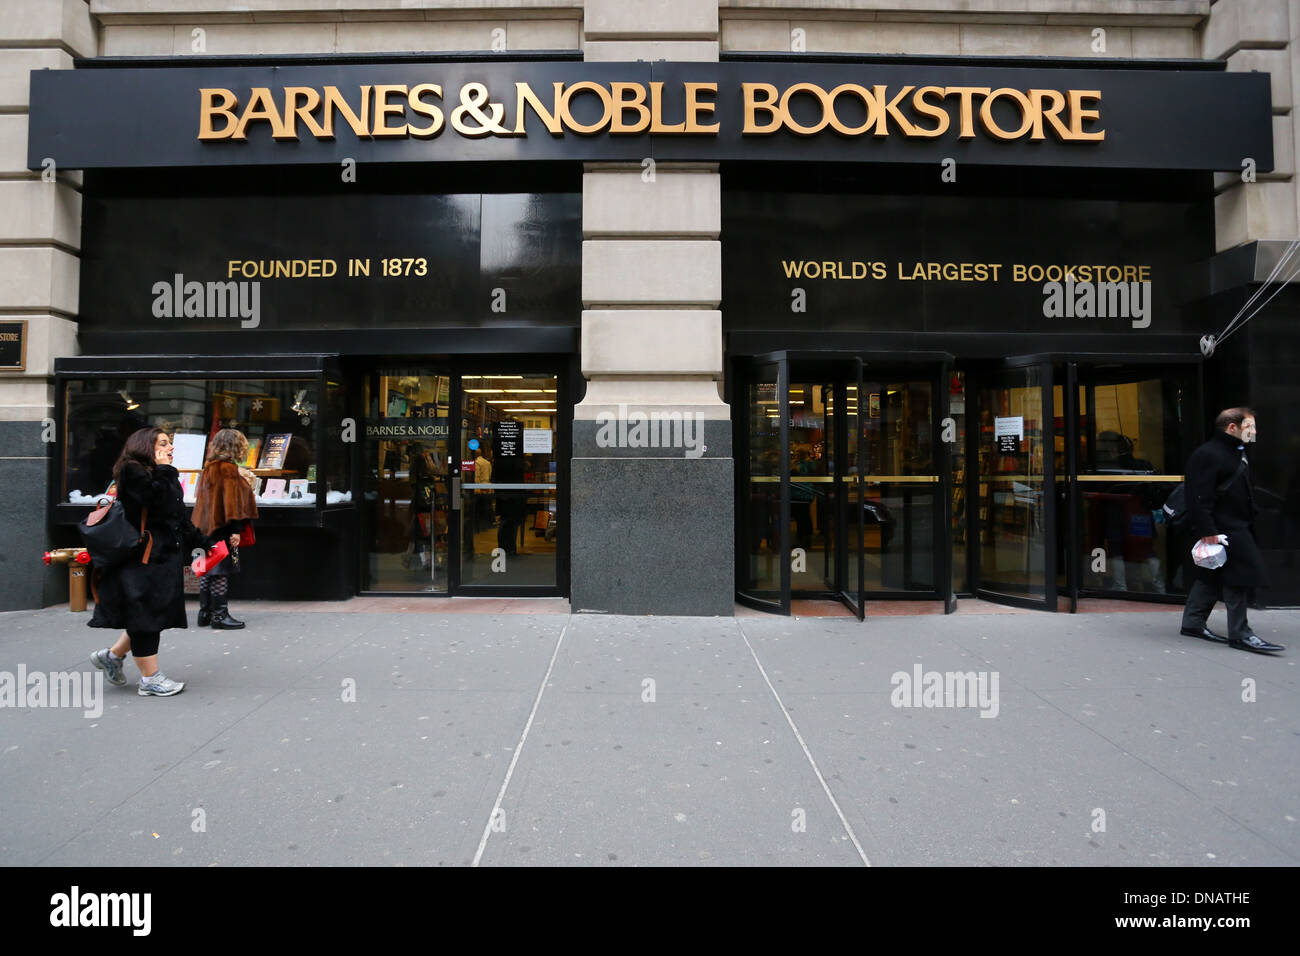 [Historisches Schaufenster] Barnes & Noble Bookstore Chelsea, 105 Fifth Ave, New York, NY. Außenfassade einer Buchhandlung. Stockfoto